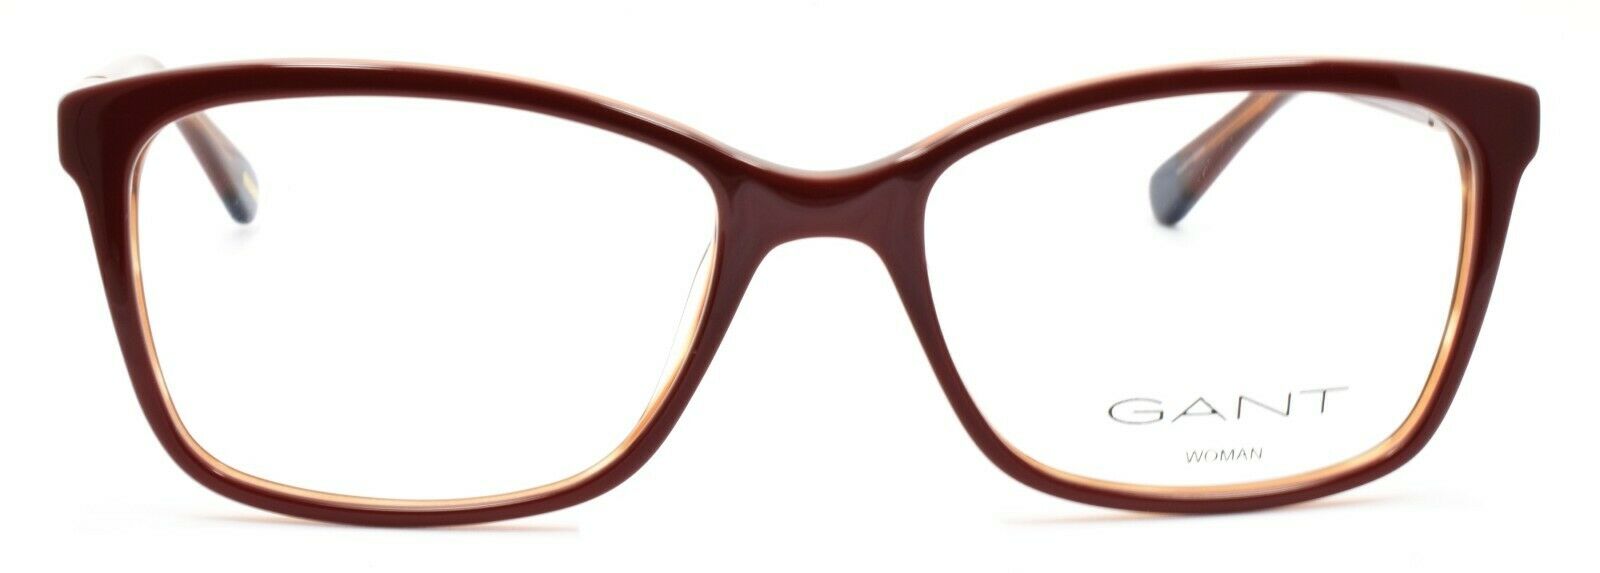 2-GANT GA4070 069 Women's Eyeglasses Frames 53-17-135 Shiny Bordeaux + CASE-664689812417-IKSpecs